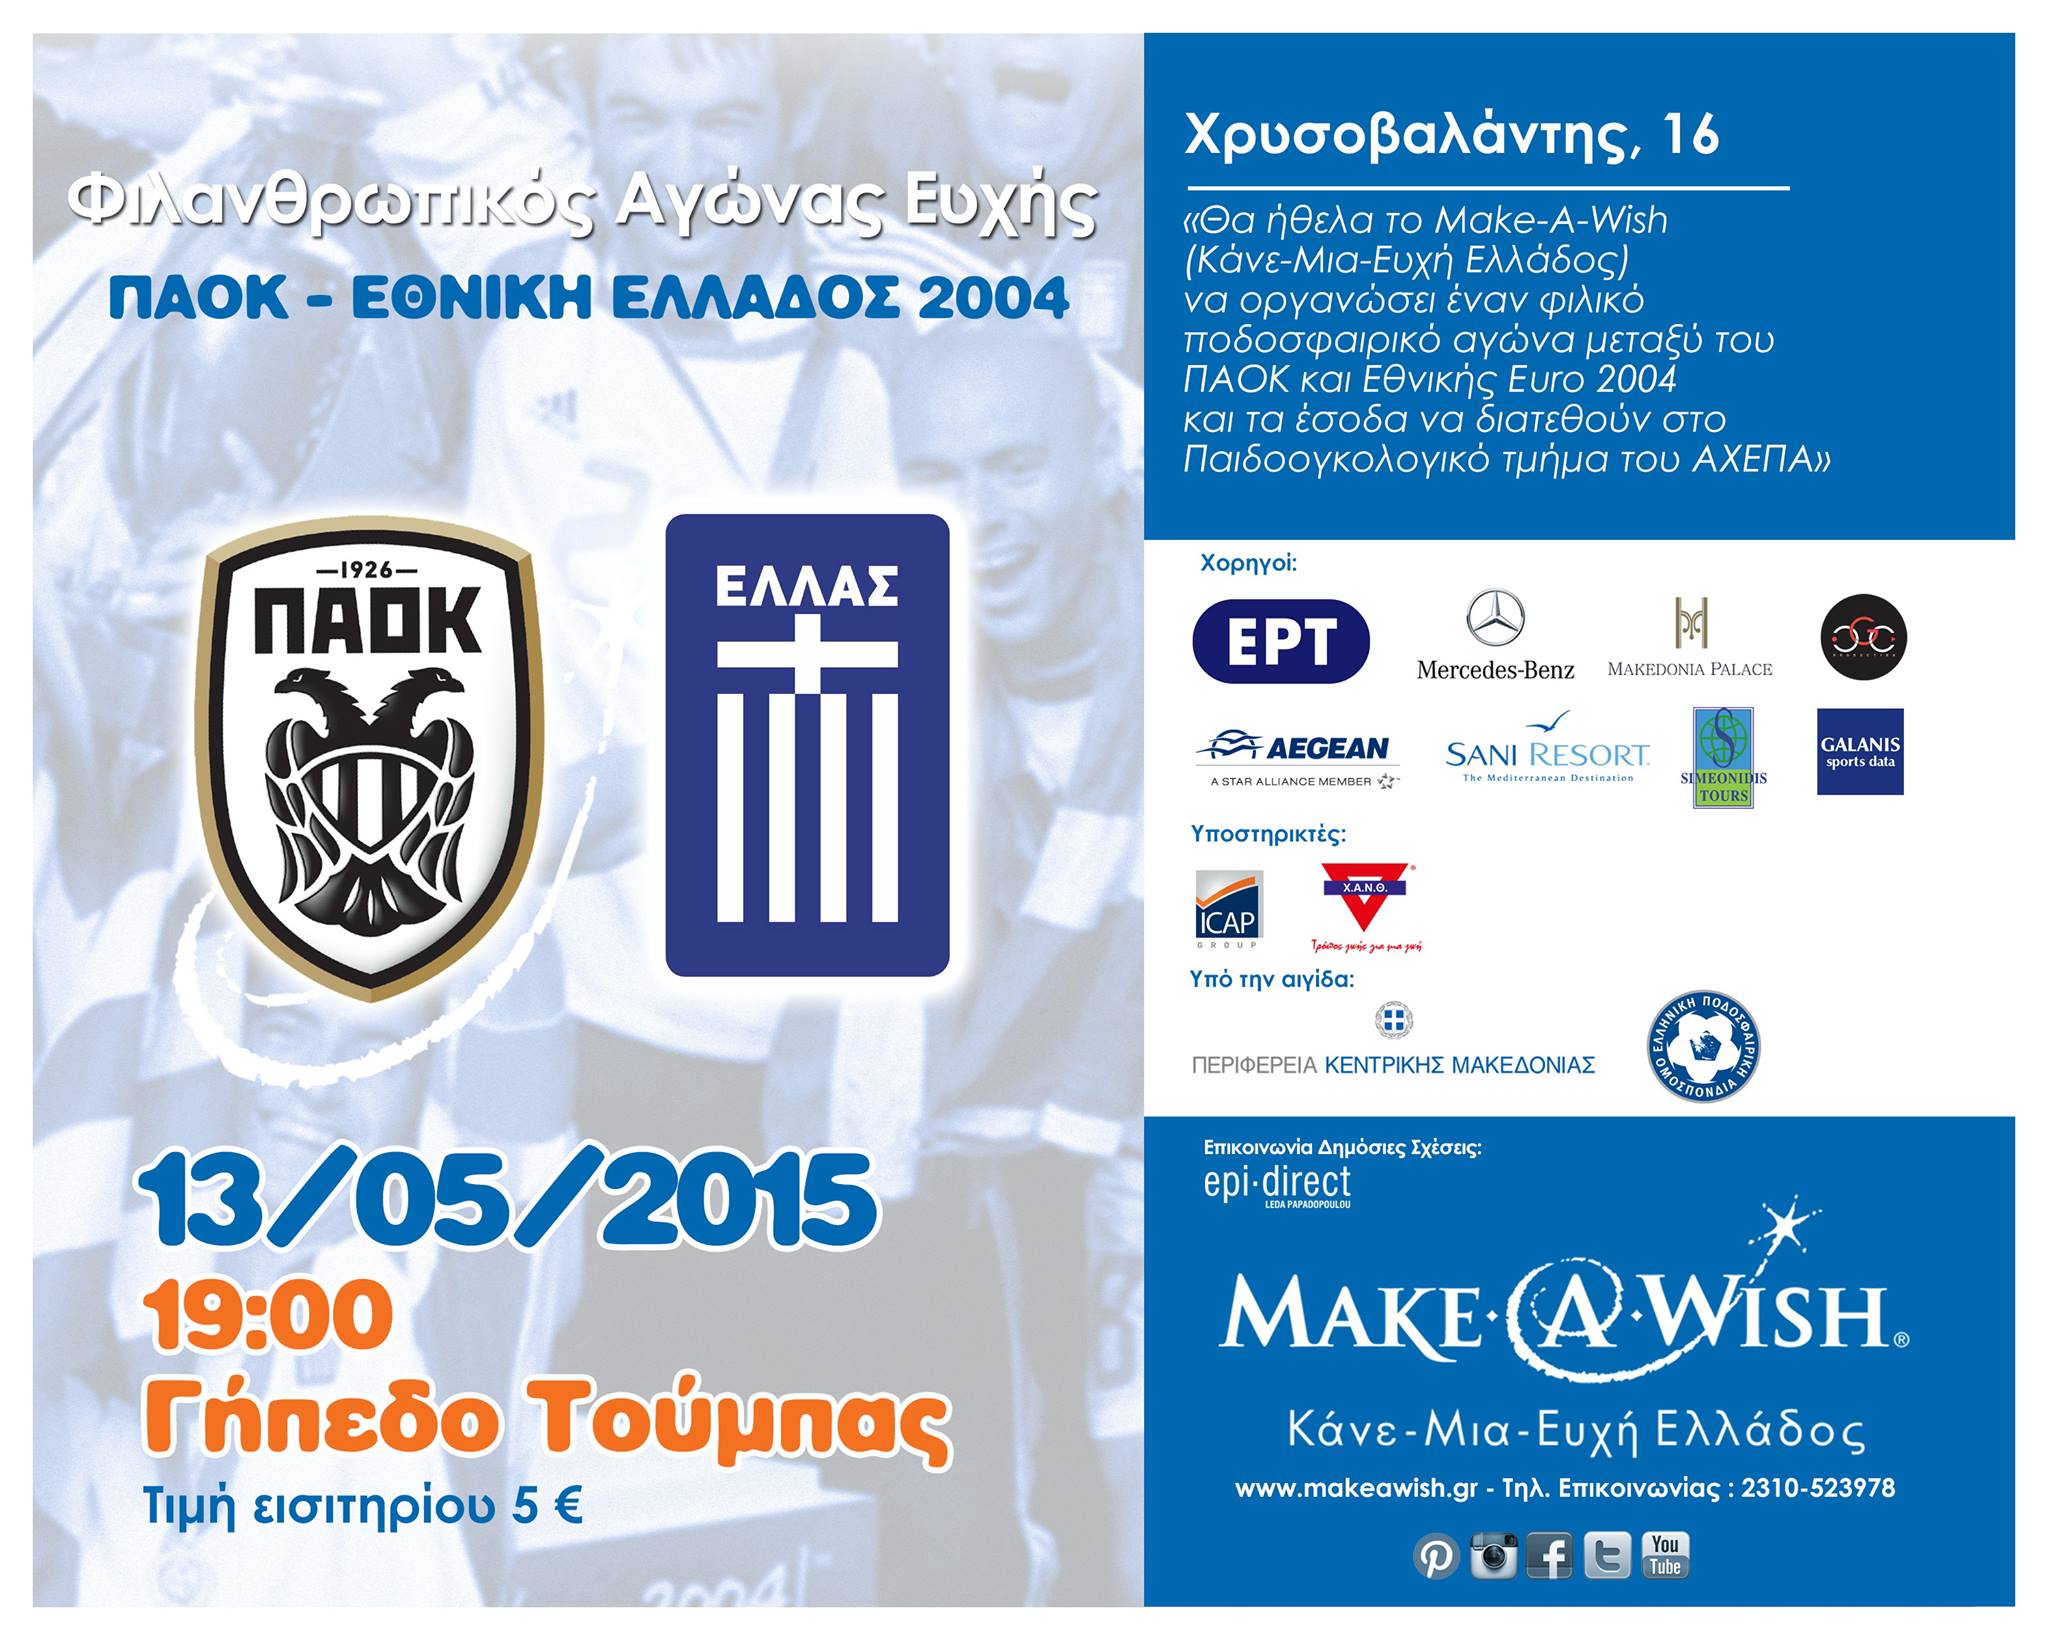 Κάνε-Μια-Ευχή Ελλάδος: Φιλανθρωπικός Ποδοσφαιρικός Αγώνας